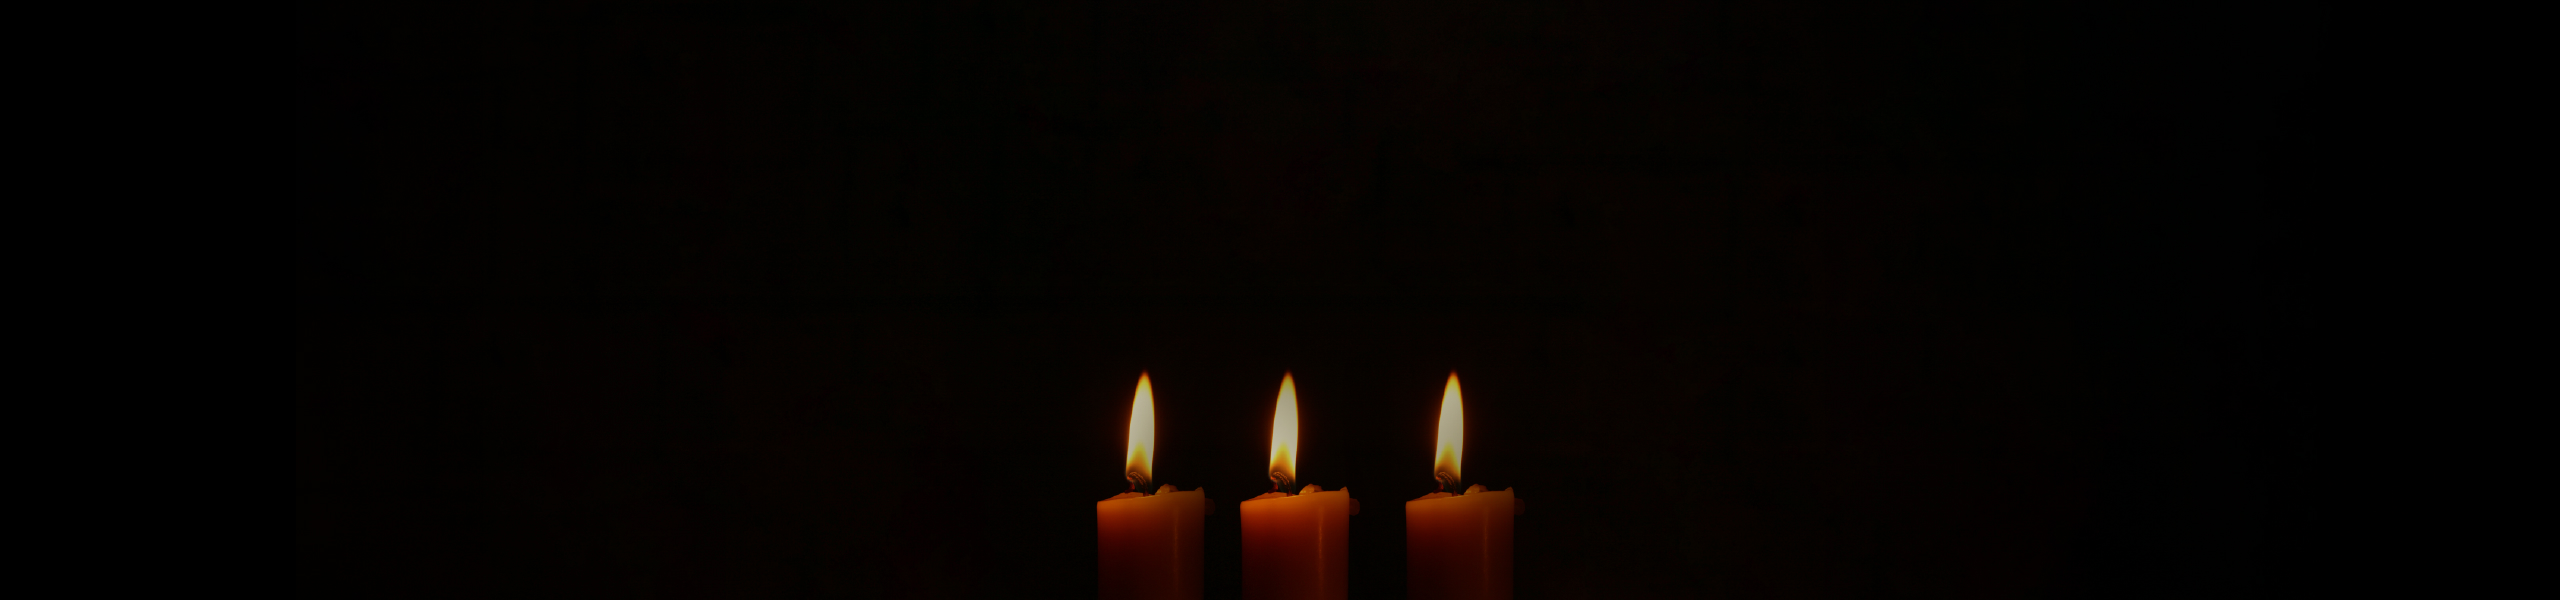 Lighten our Darkness | John Rutter & The Cambridge Singers